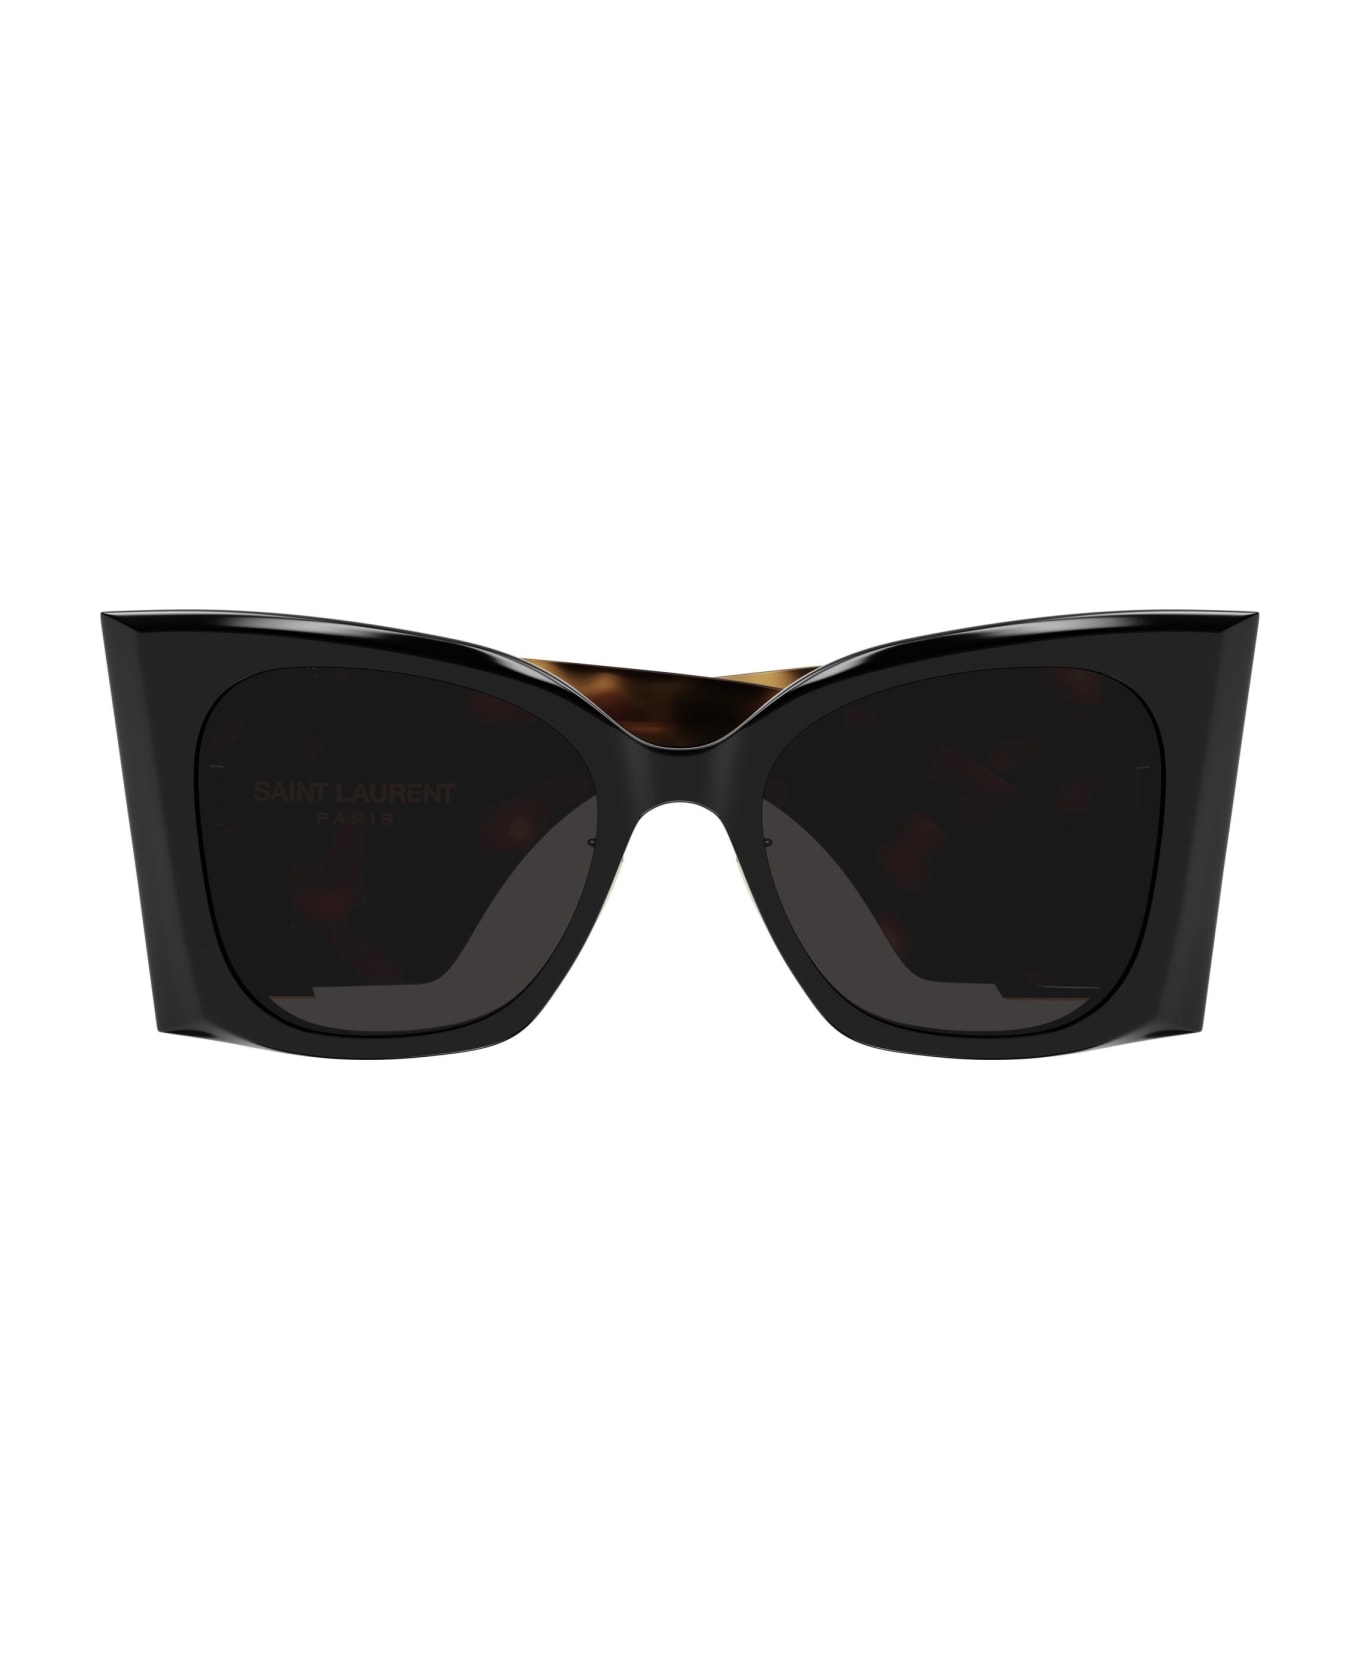 Saint Laurent Eyewear Sunglasses - Multicolor